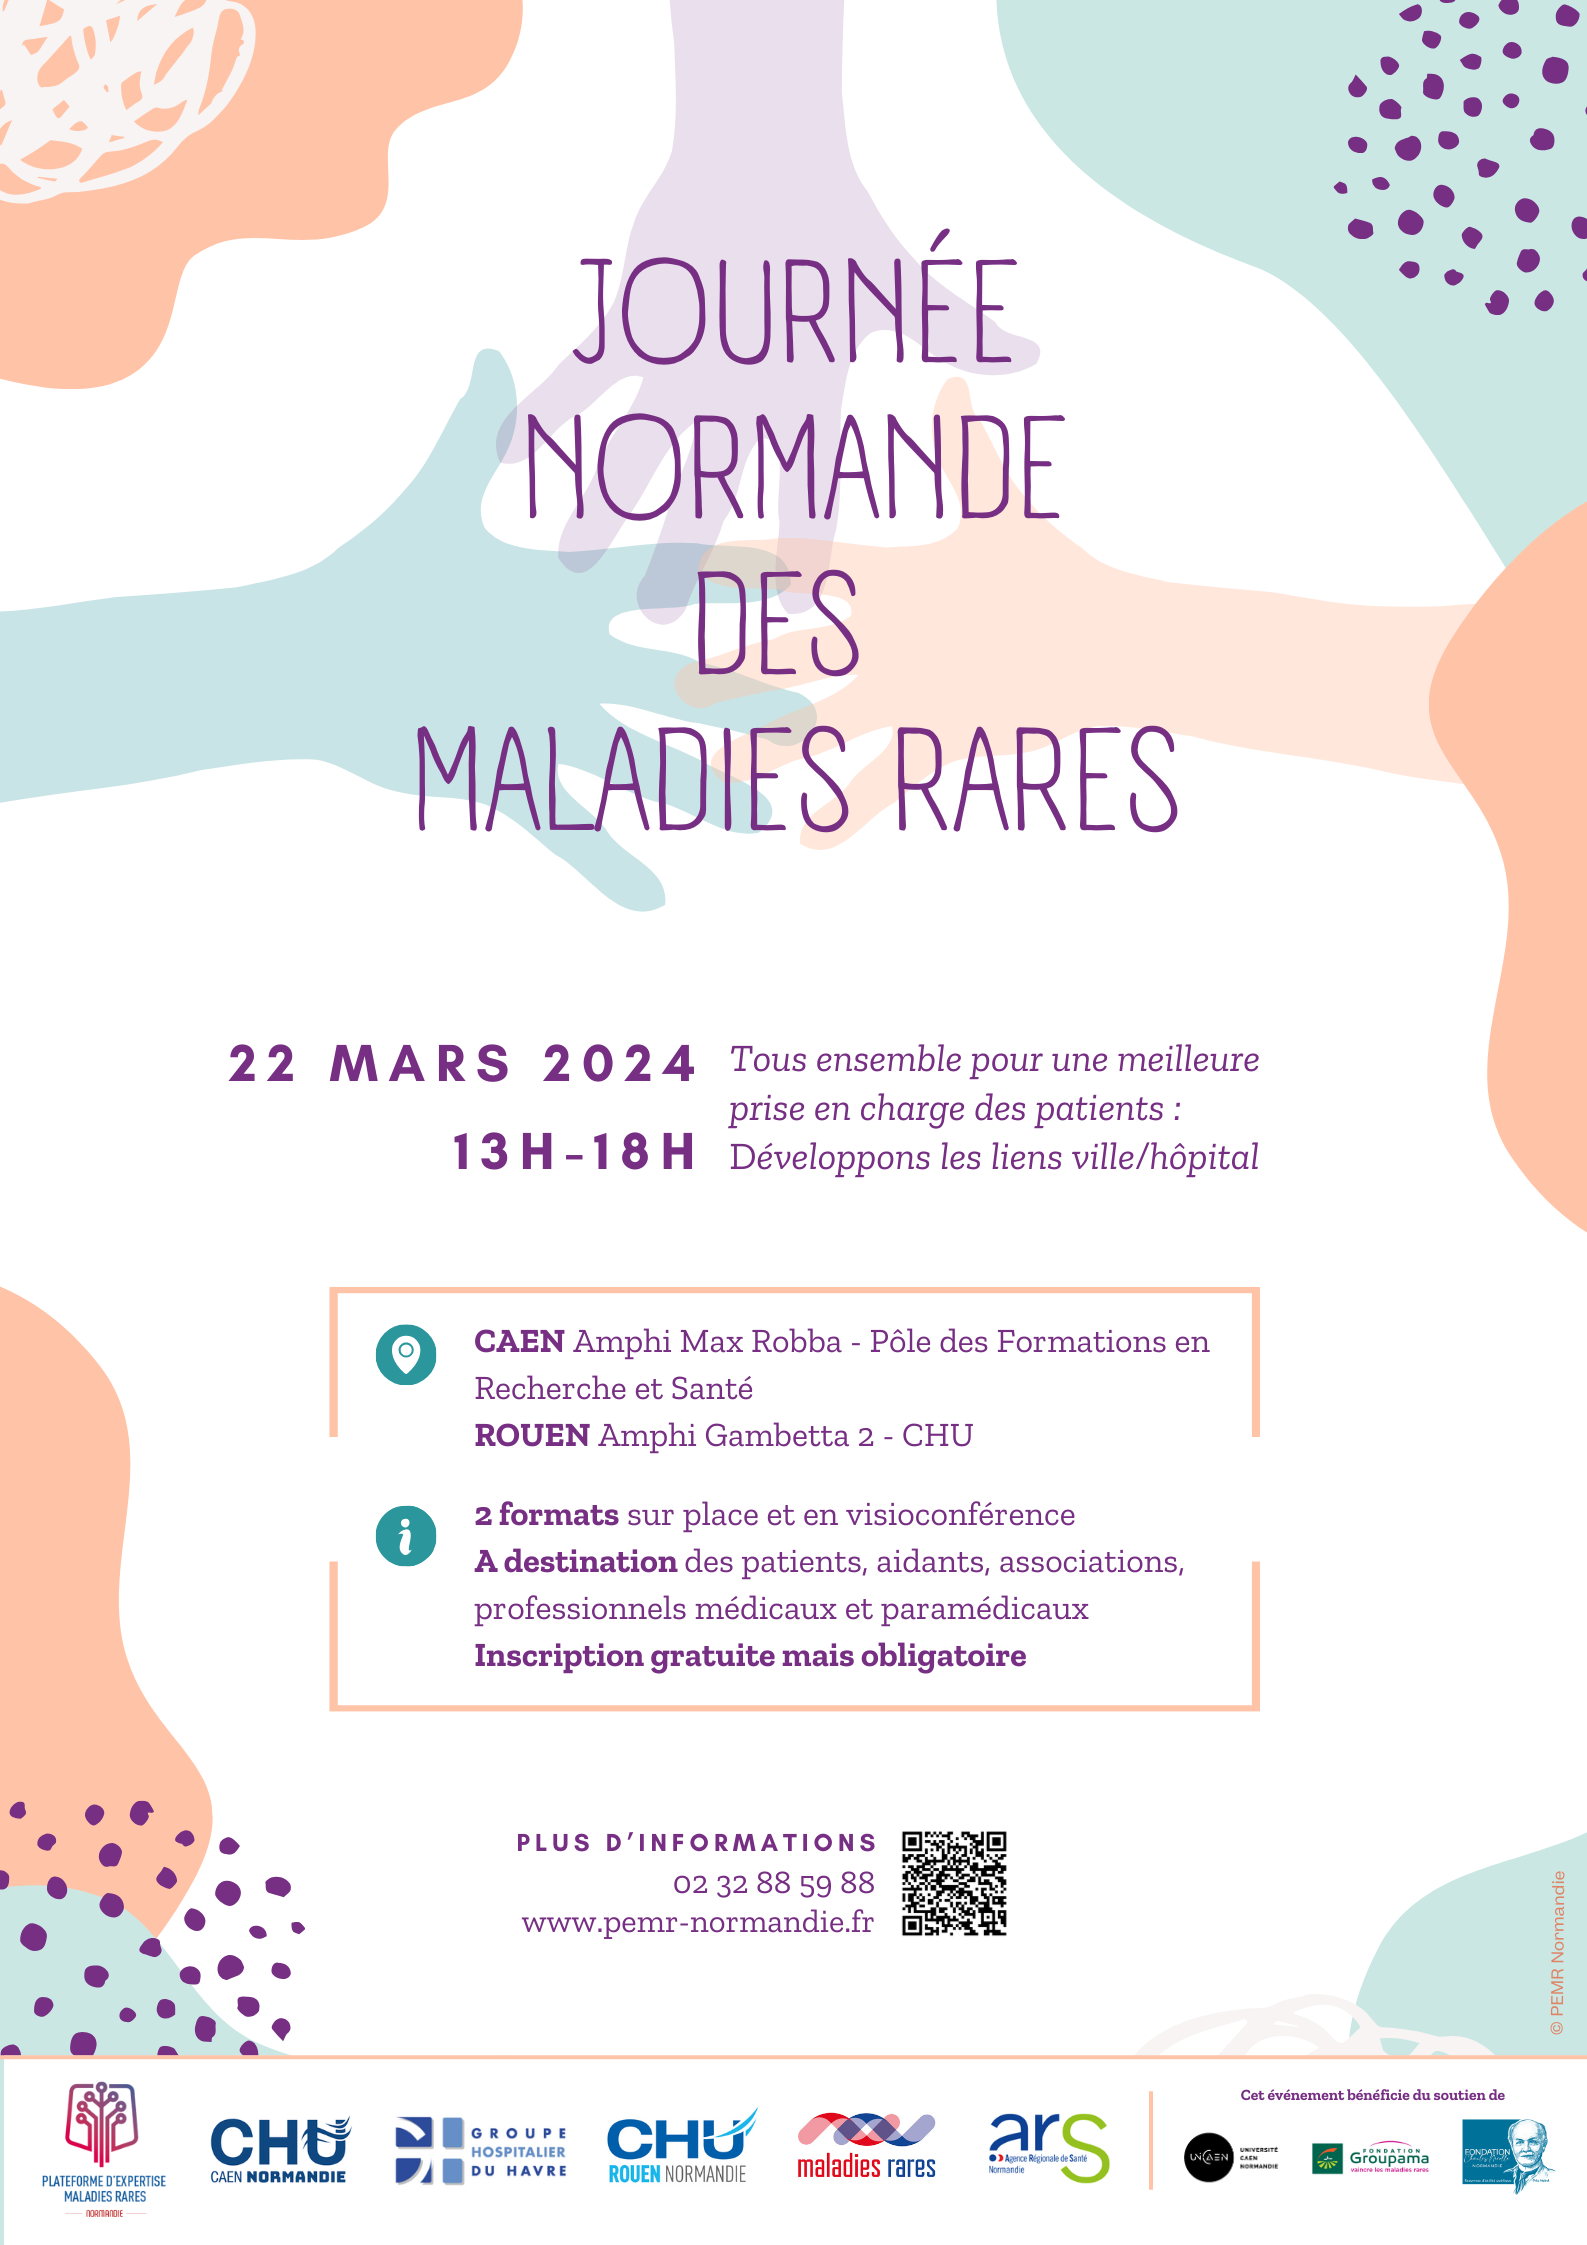 Journée Normande des Maladies Rares - 22 mars 2024